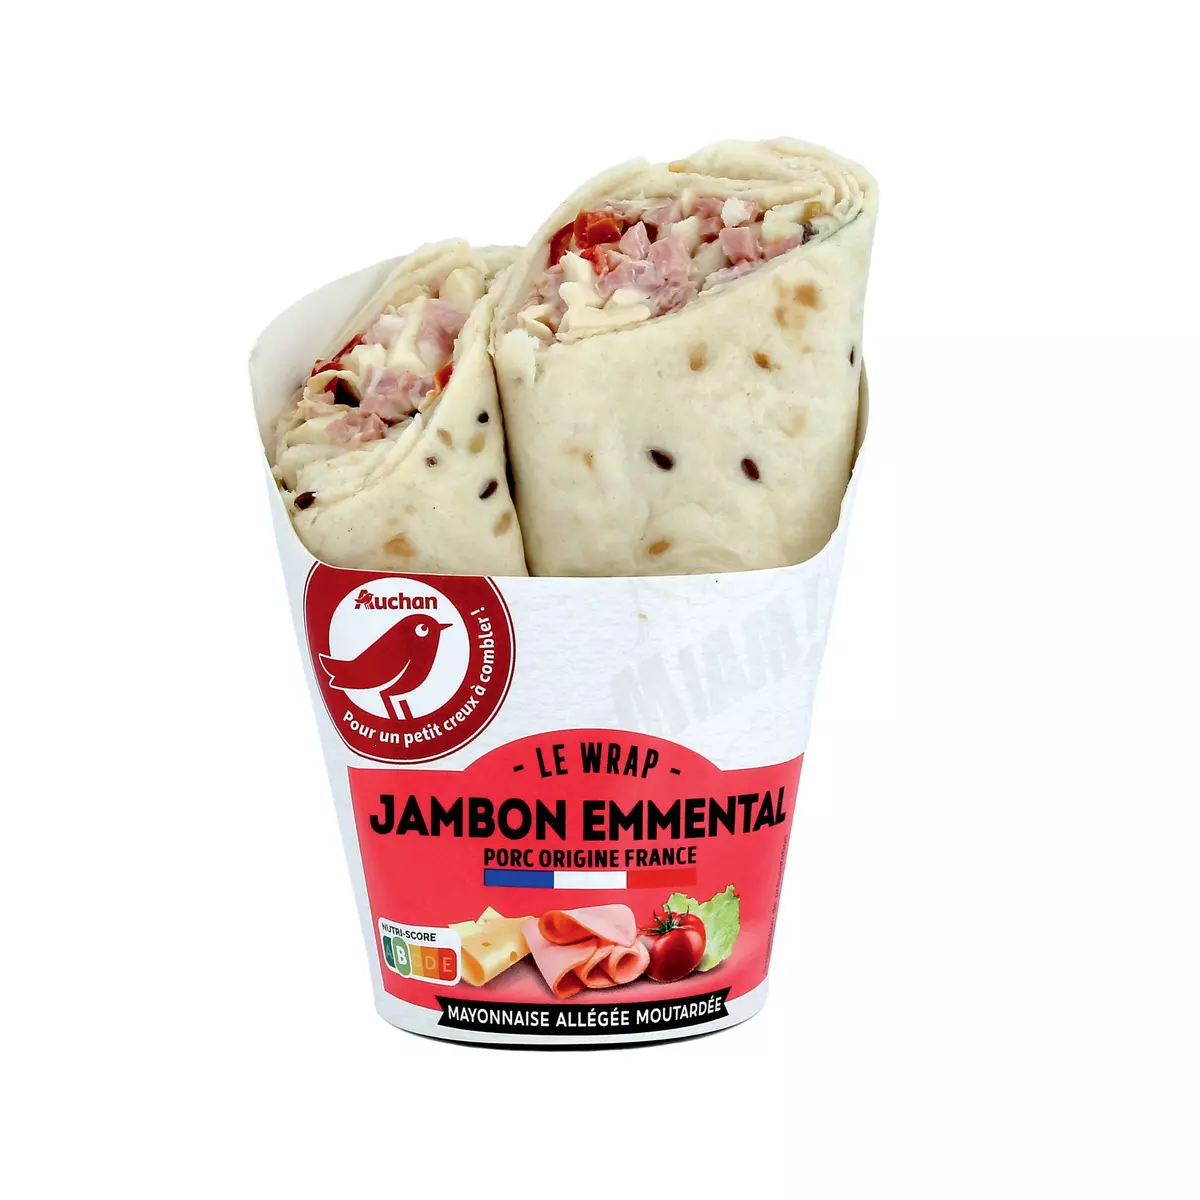 AUCHAN Wrap jambon emmental mayonnaise allégée moutardée 2 pièces 190g